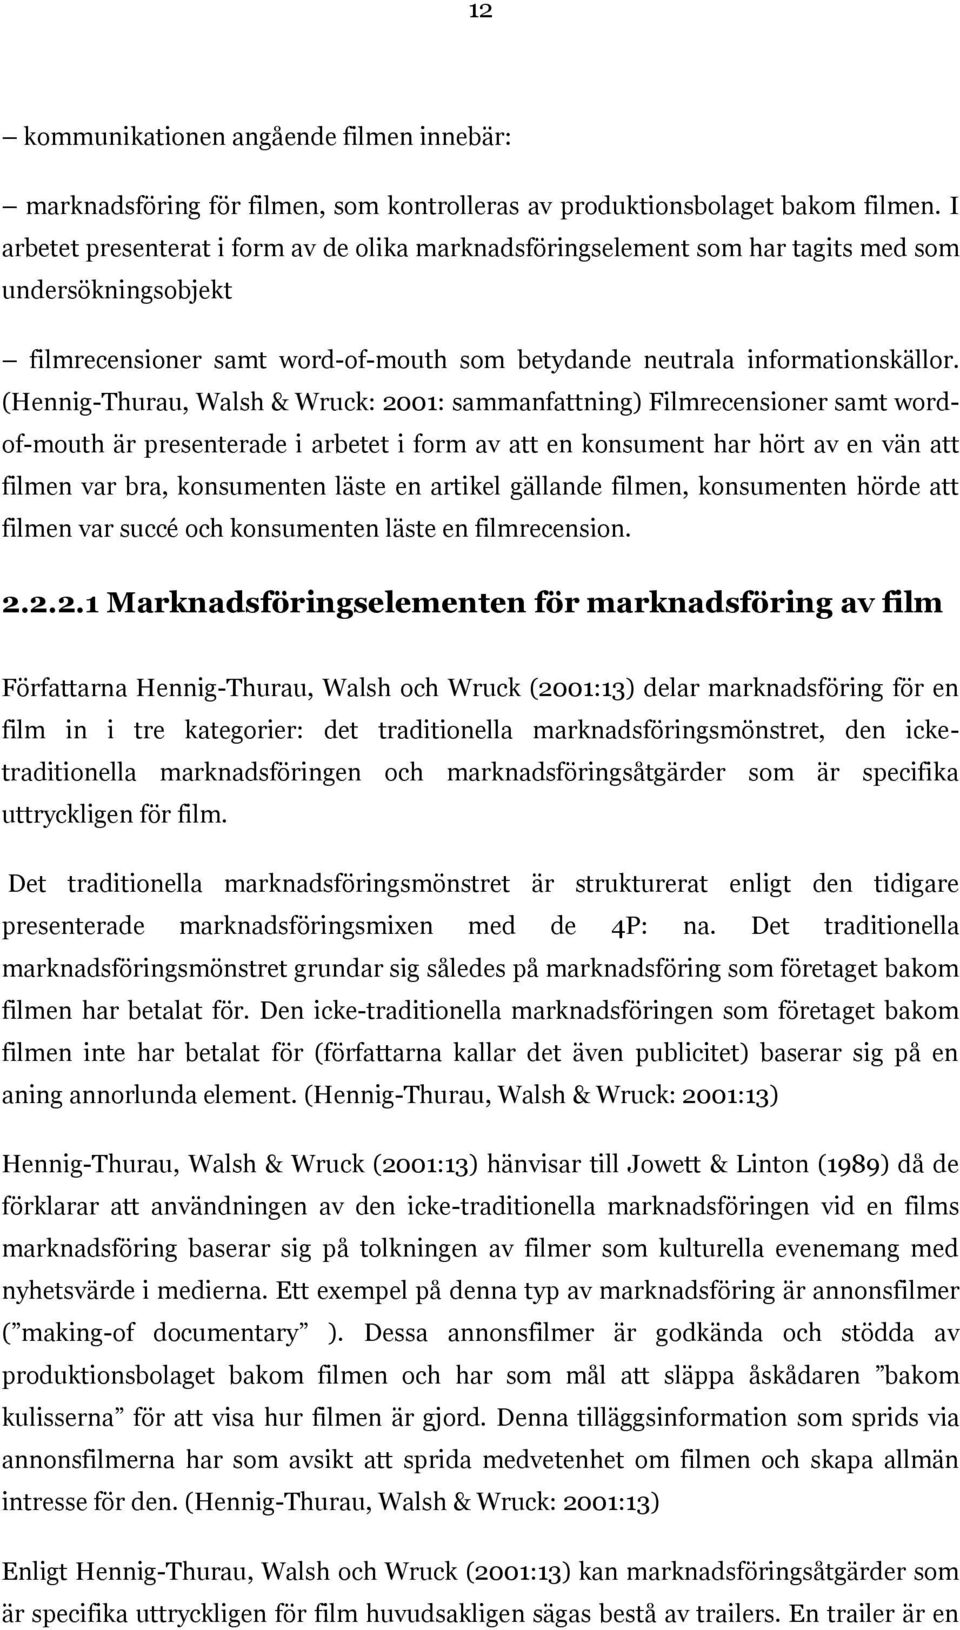 (Hennig-Thurau, Walsh & Wruck: 2001: sammanfattning) Filmrecensioner samt wordof-mouth är presenterade i arbetet i form av att en konsument har hört av en vän att filmen var bra, konsumenten läste en